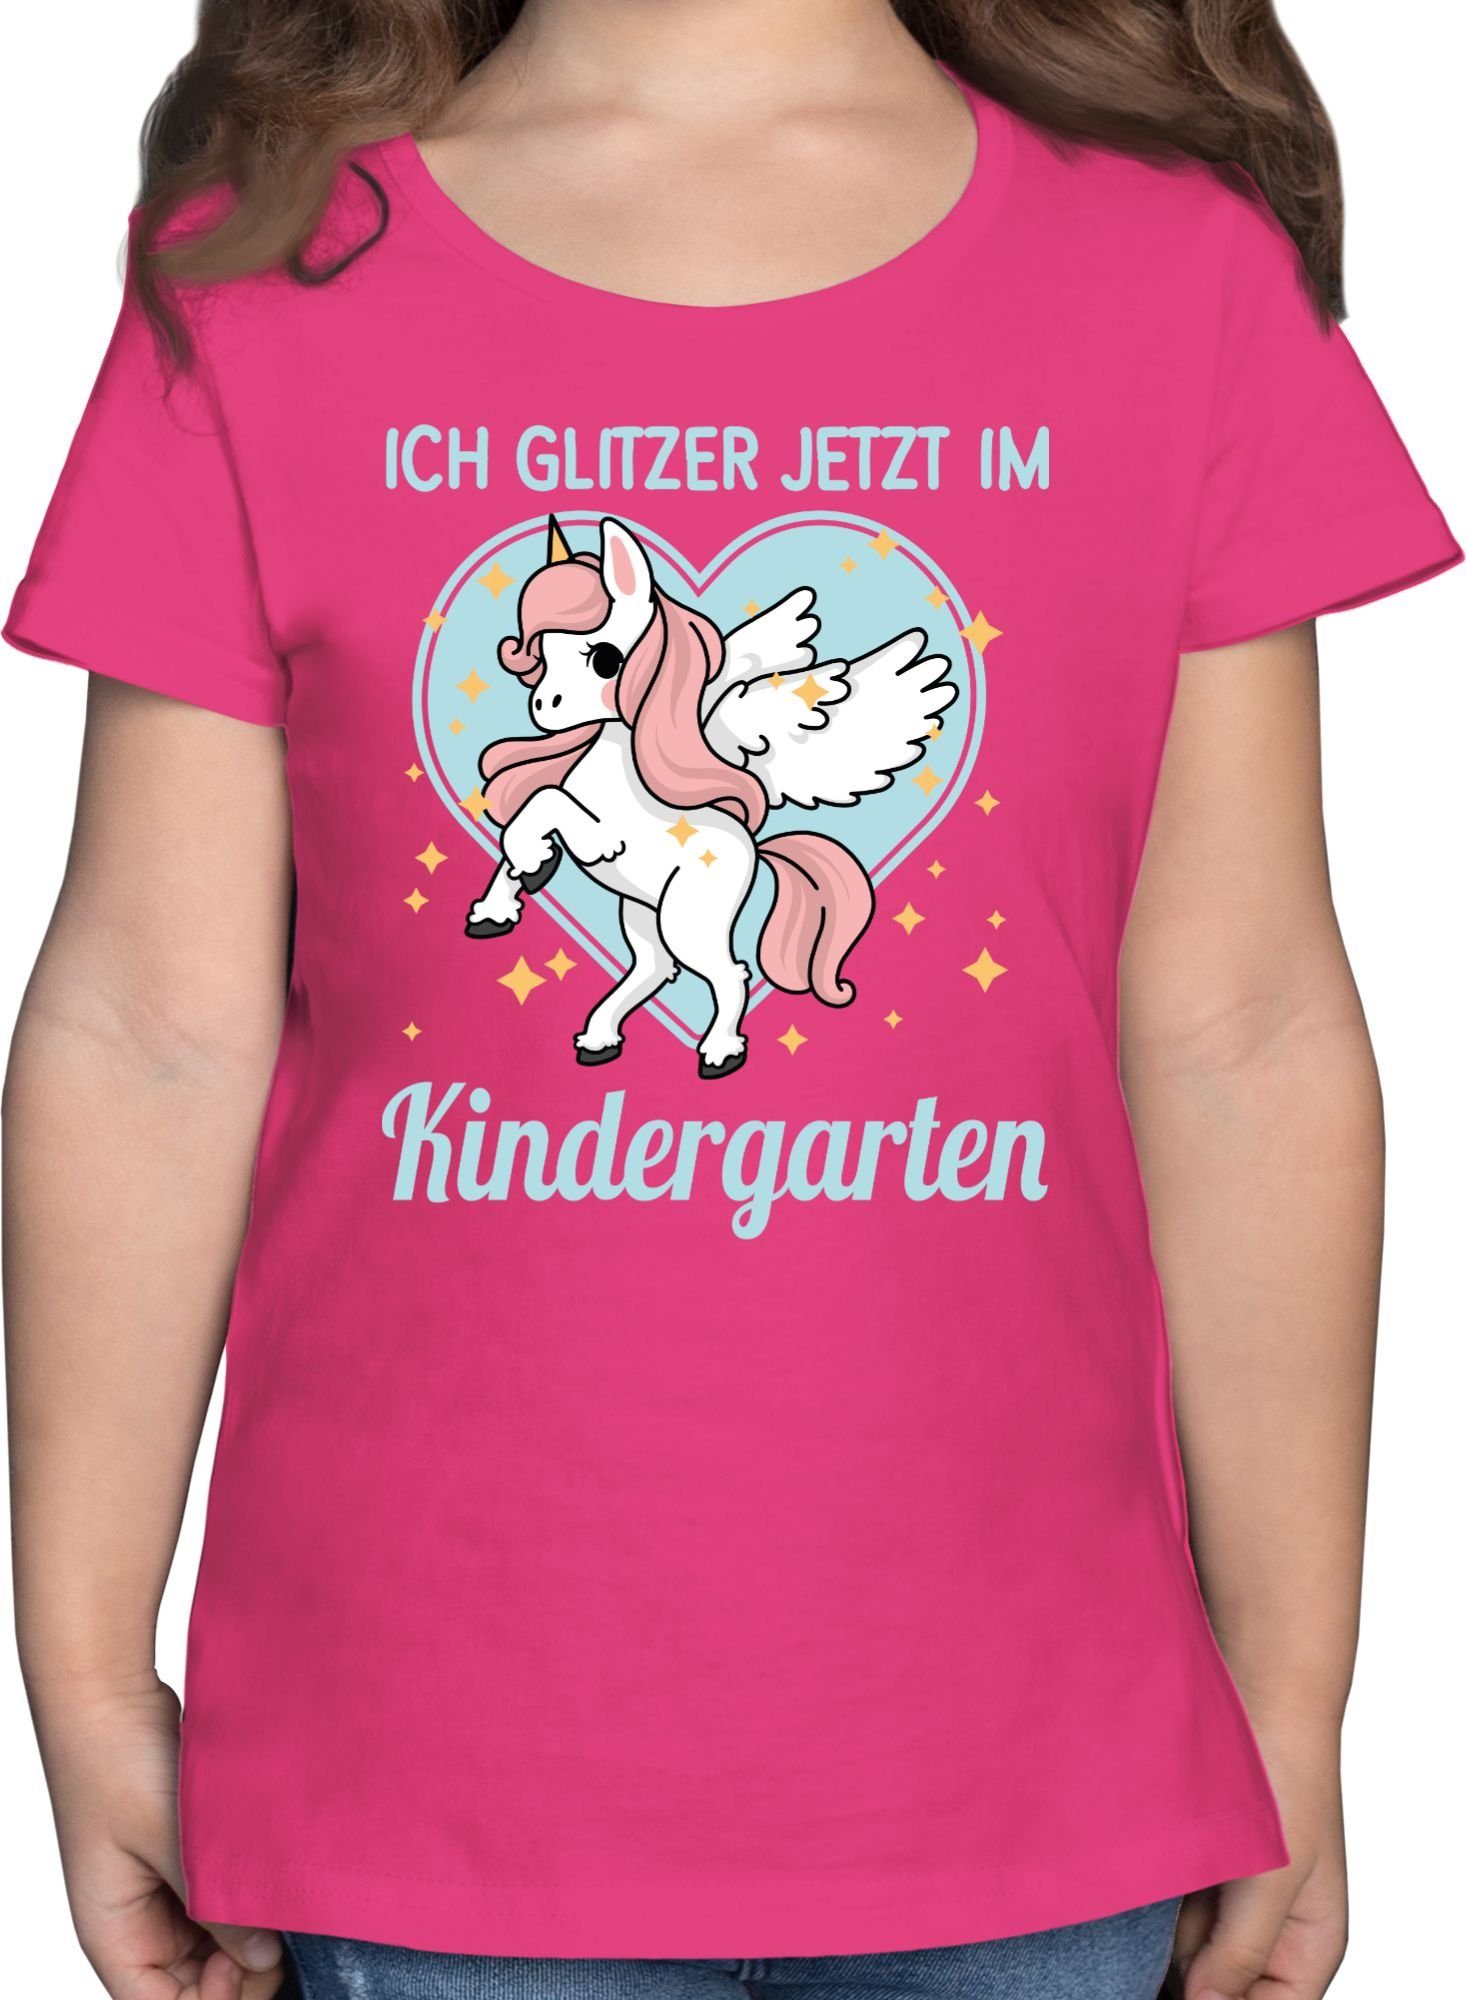 Shirtracer T-Shirt Glitzer jetzt im Kindergarten - Einhorn Hallo Kindergarten 1 Fuchsia